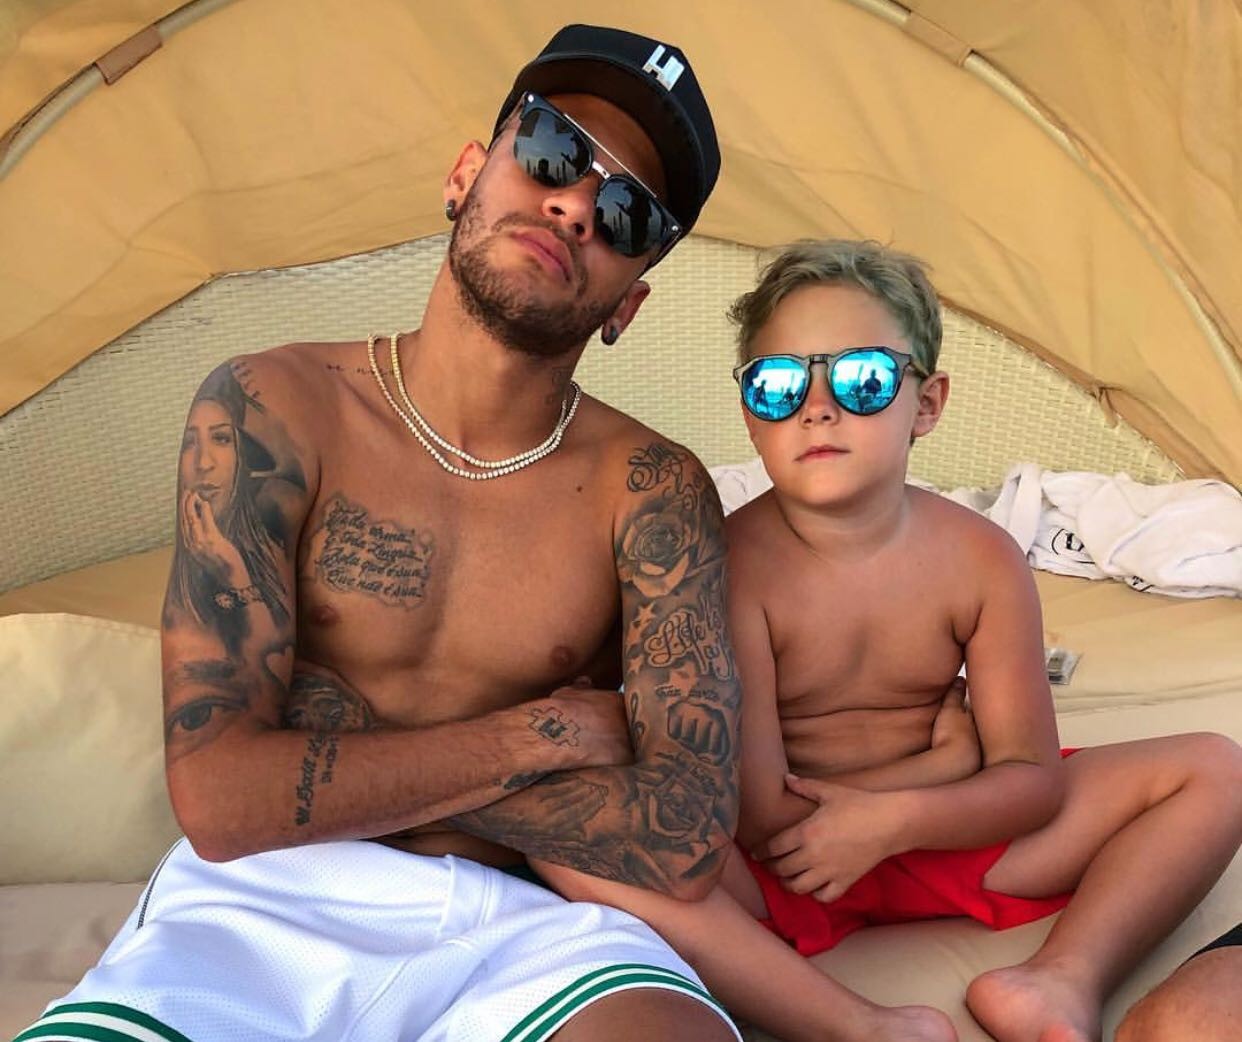 Neymar e Davi Lucca (Foto: Reprodução Instagram)